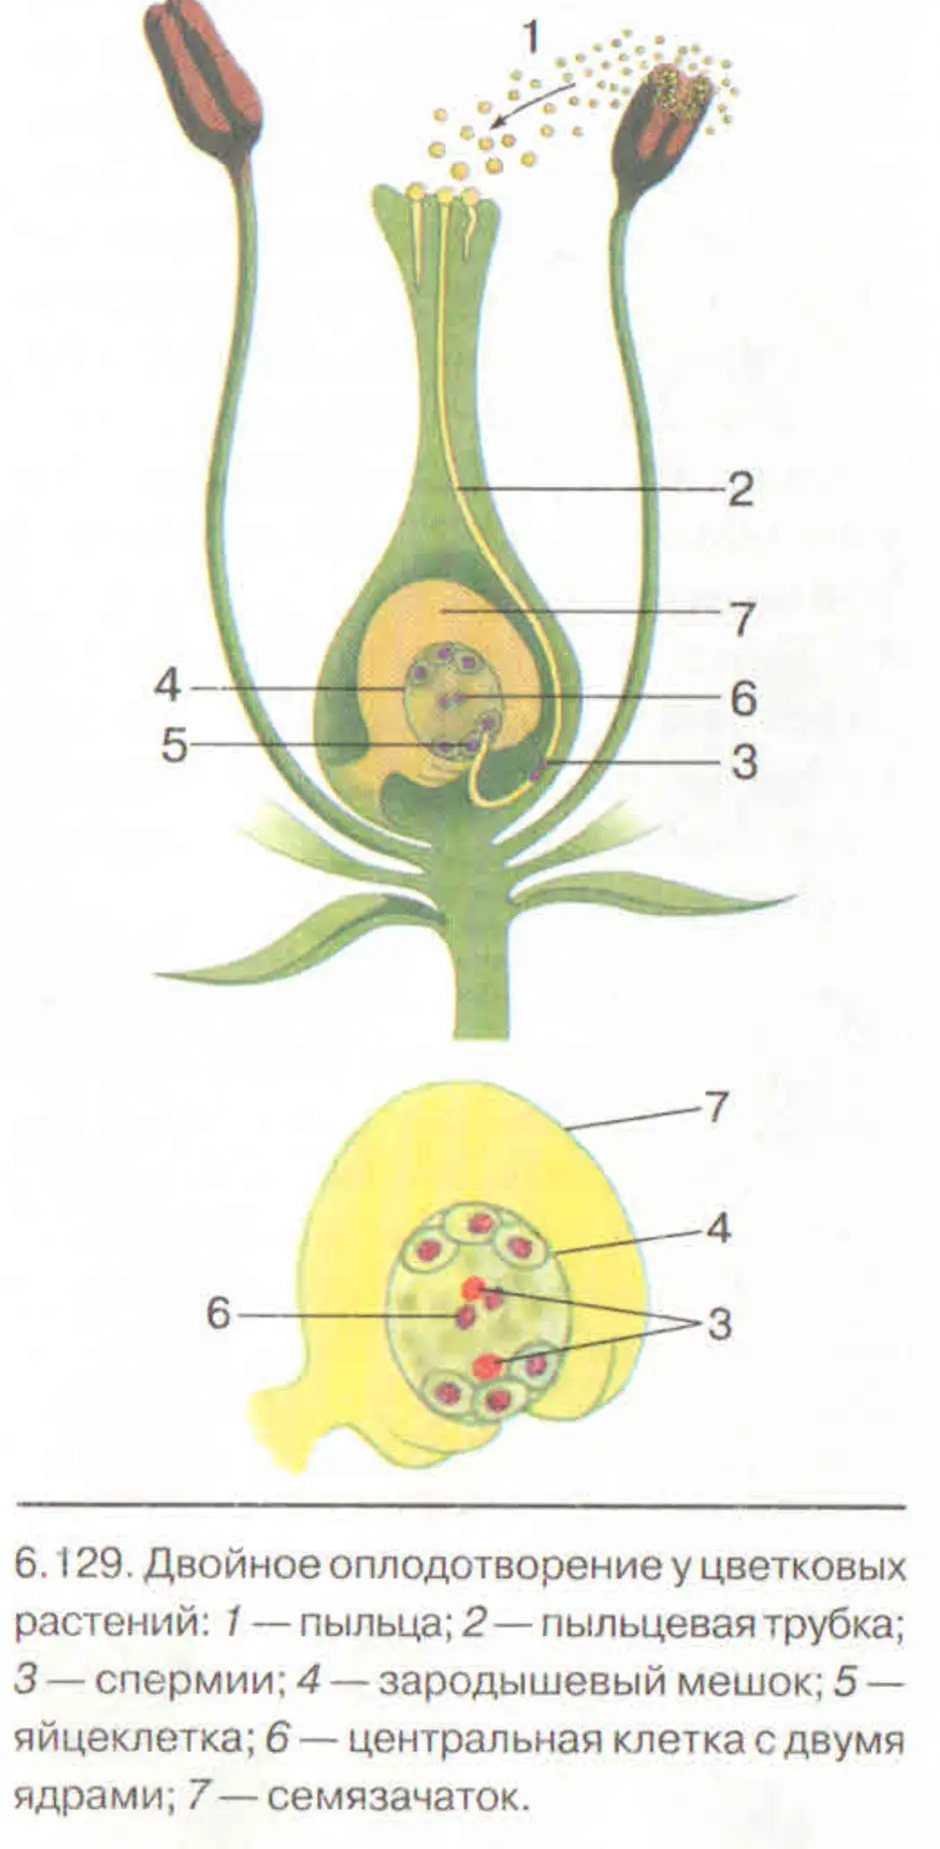 Спермии покрытосеменных растений. Схема оплодотворения у цветковых растений 6 класс. Схема двойного оплодотворения у растений. Схема двойного оплодотворения у покрытосеменных растений. Строение цветка и двойное оплодотворение у цветковых растений.